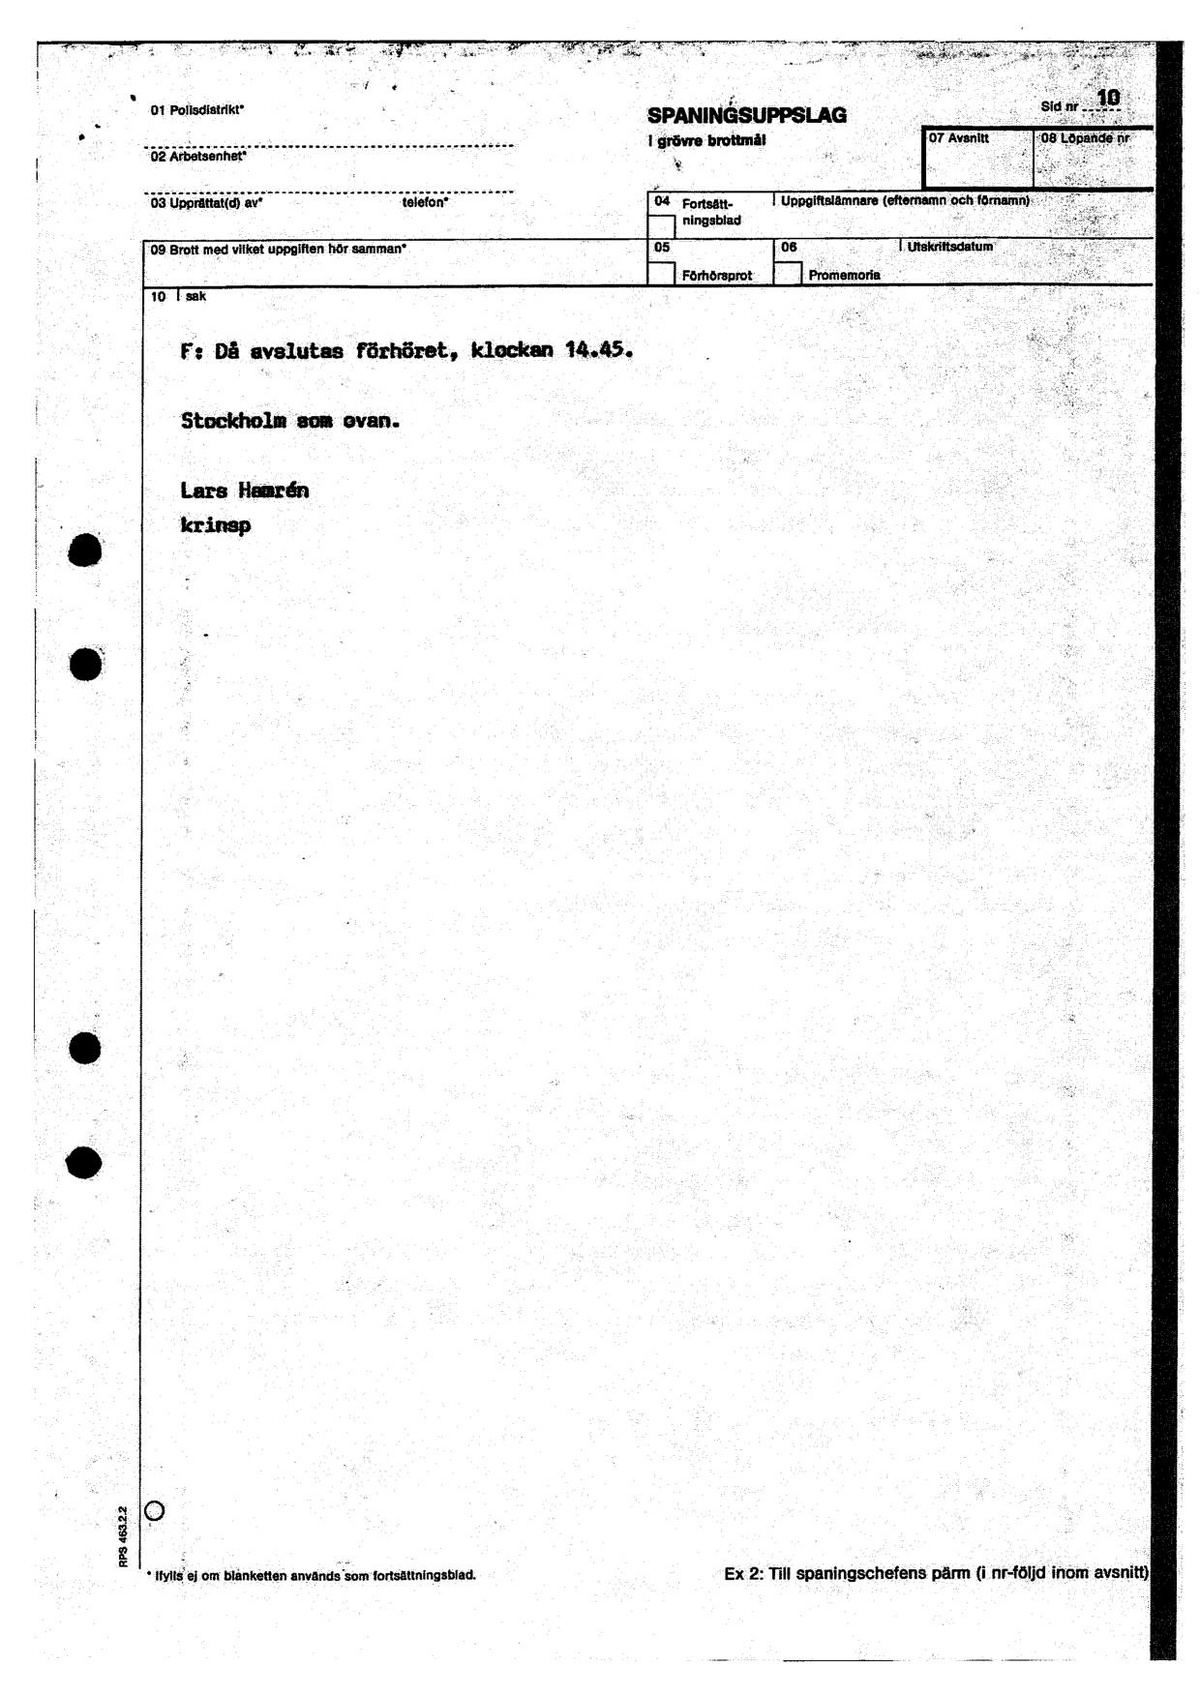 Pol-1988-08-17 T2-00-E Förhör-Mårten-Palme.pdf